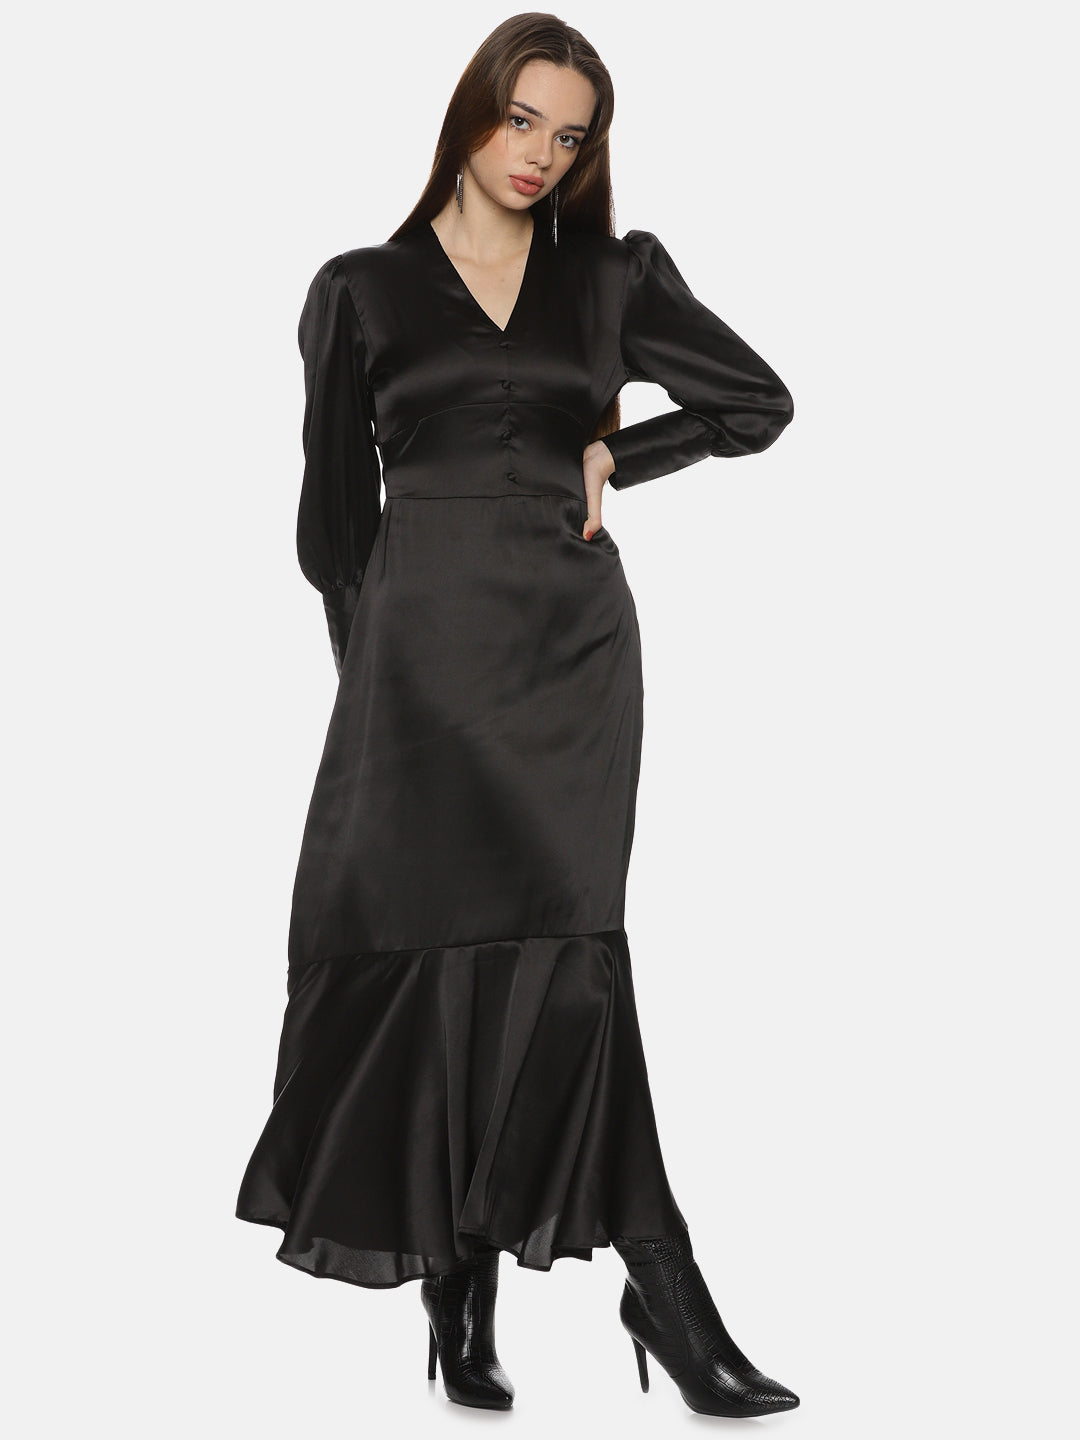 IS.U Black Vintage Maxi Dress